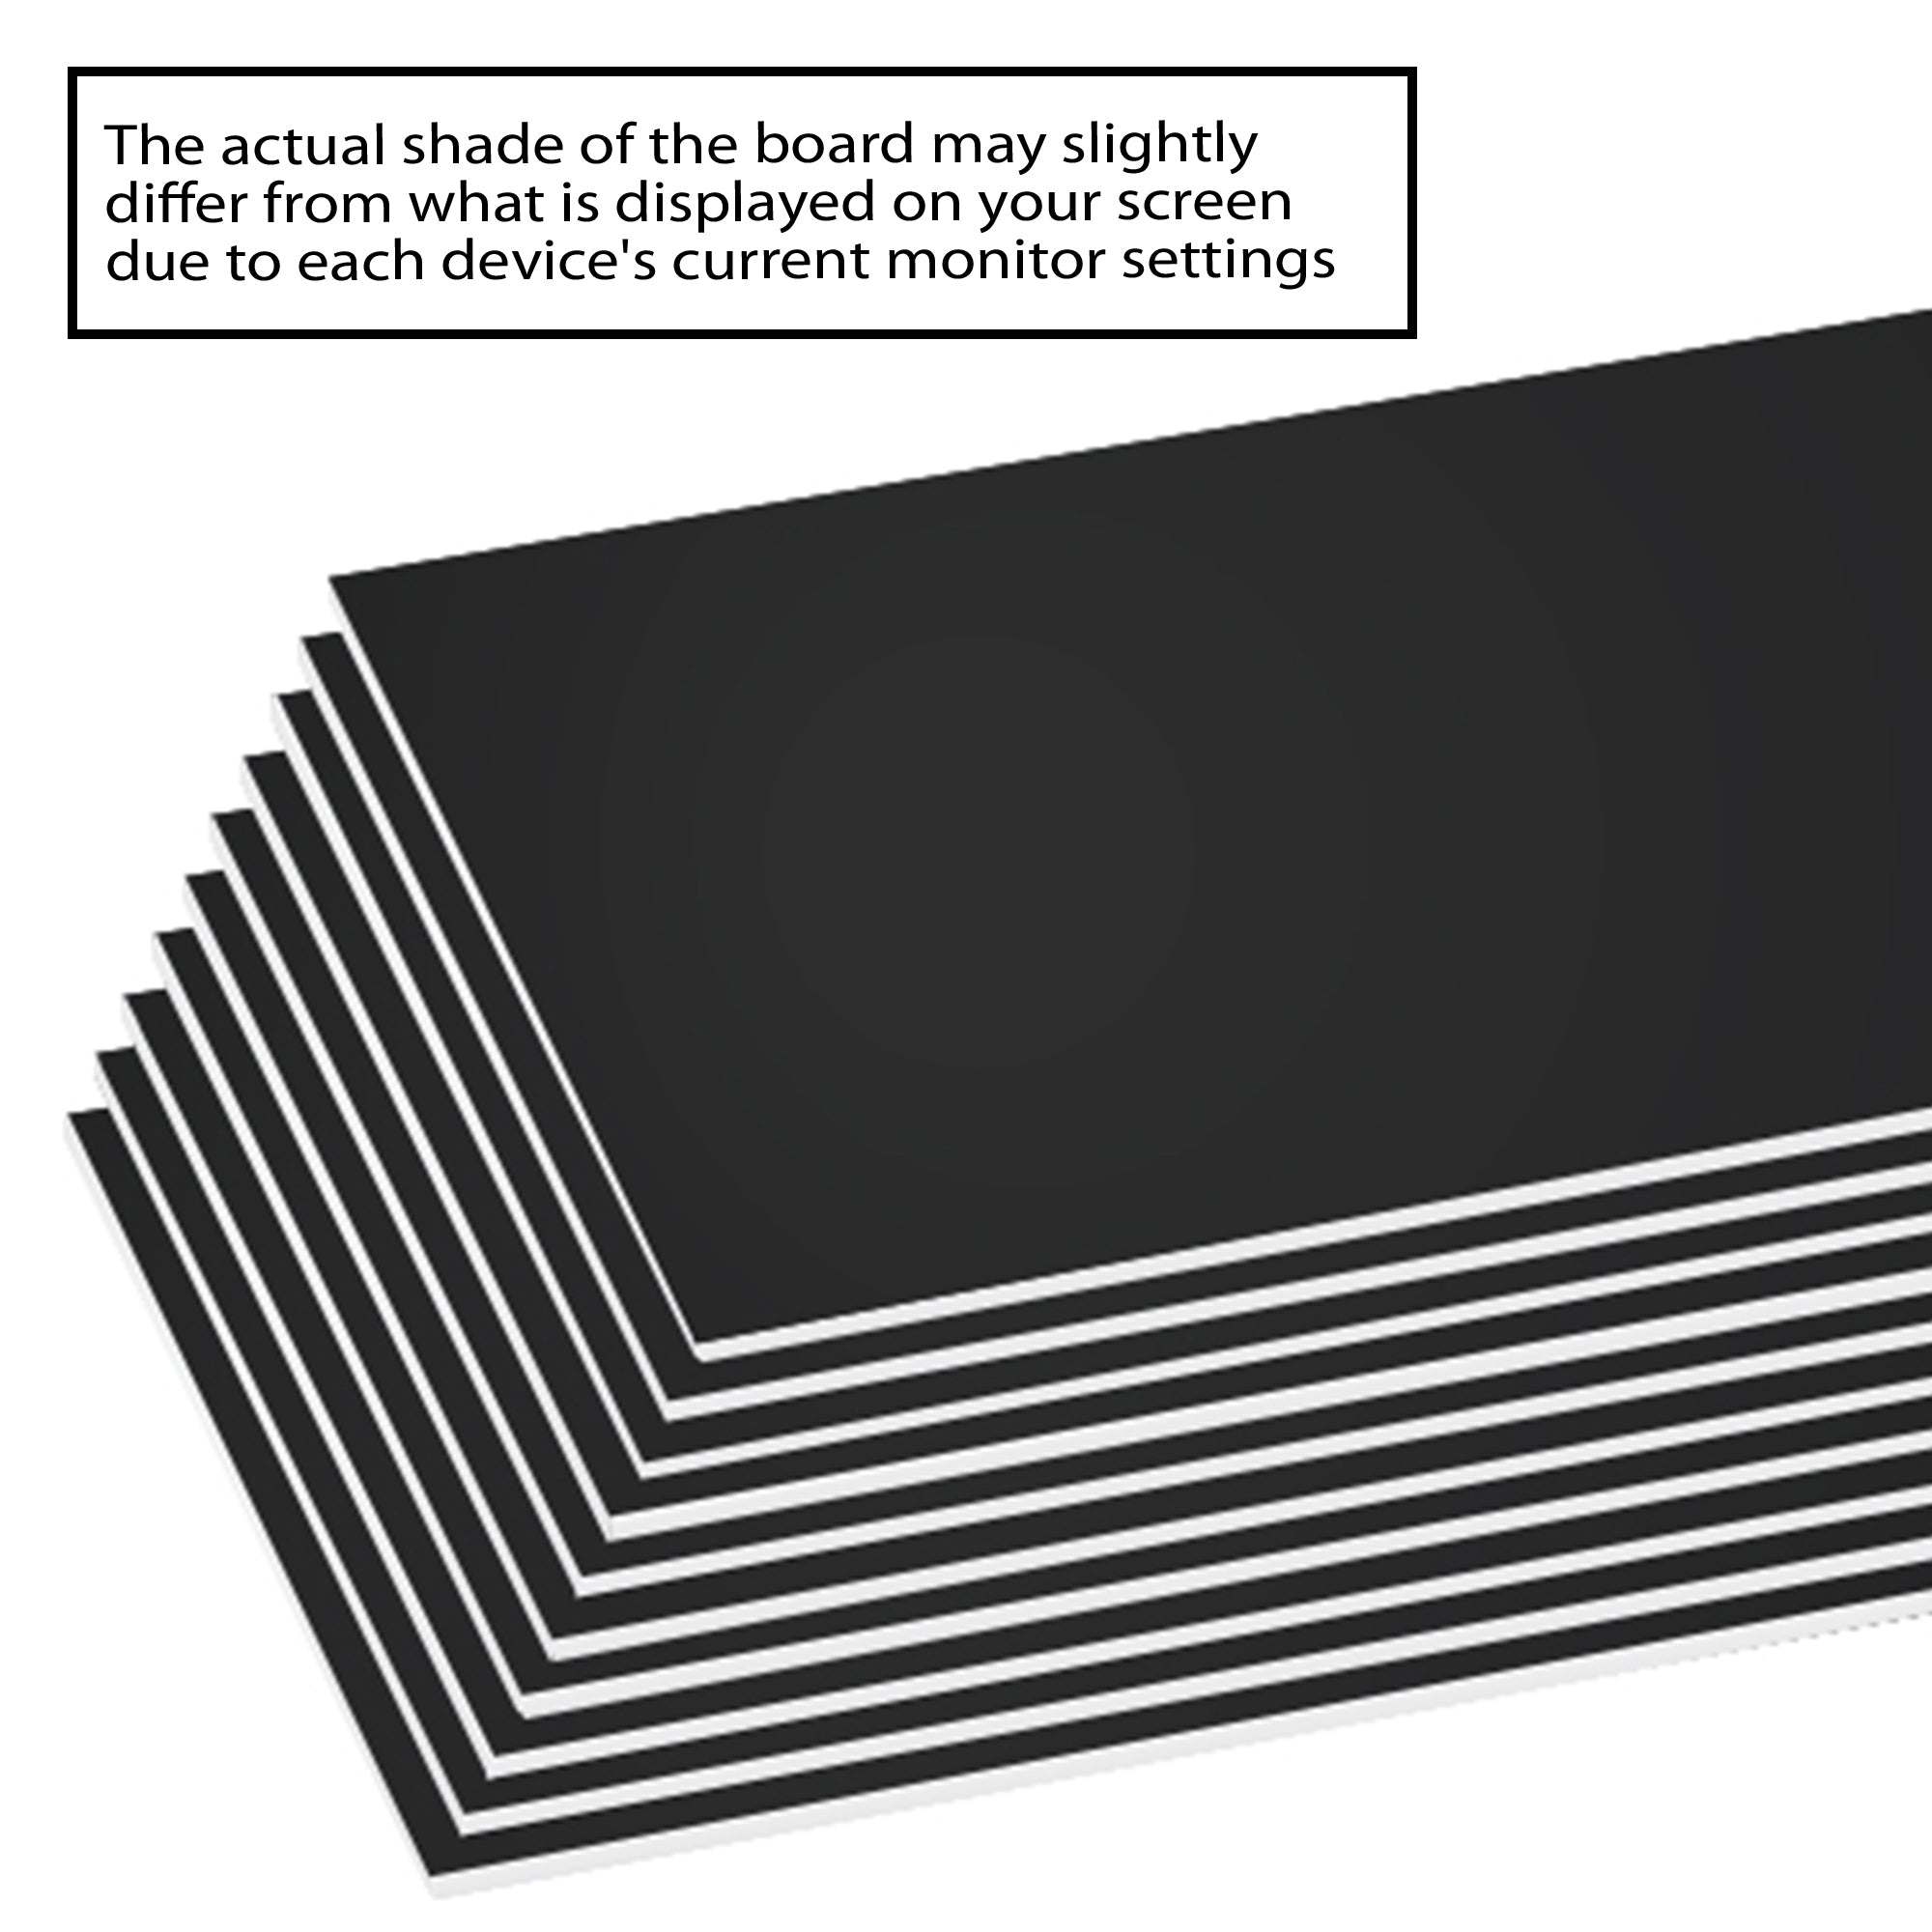 Black Foam Board (Box of 25 Sheets)